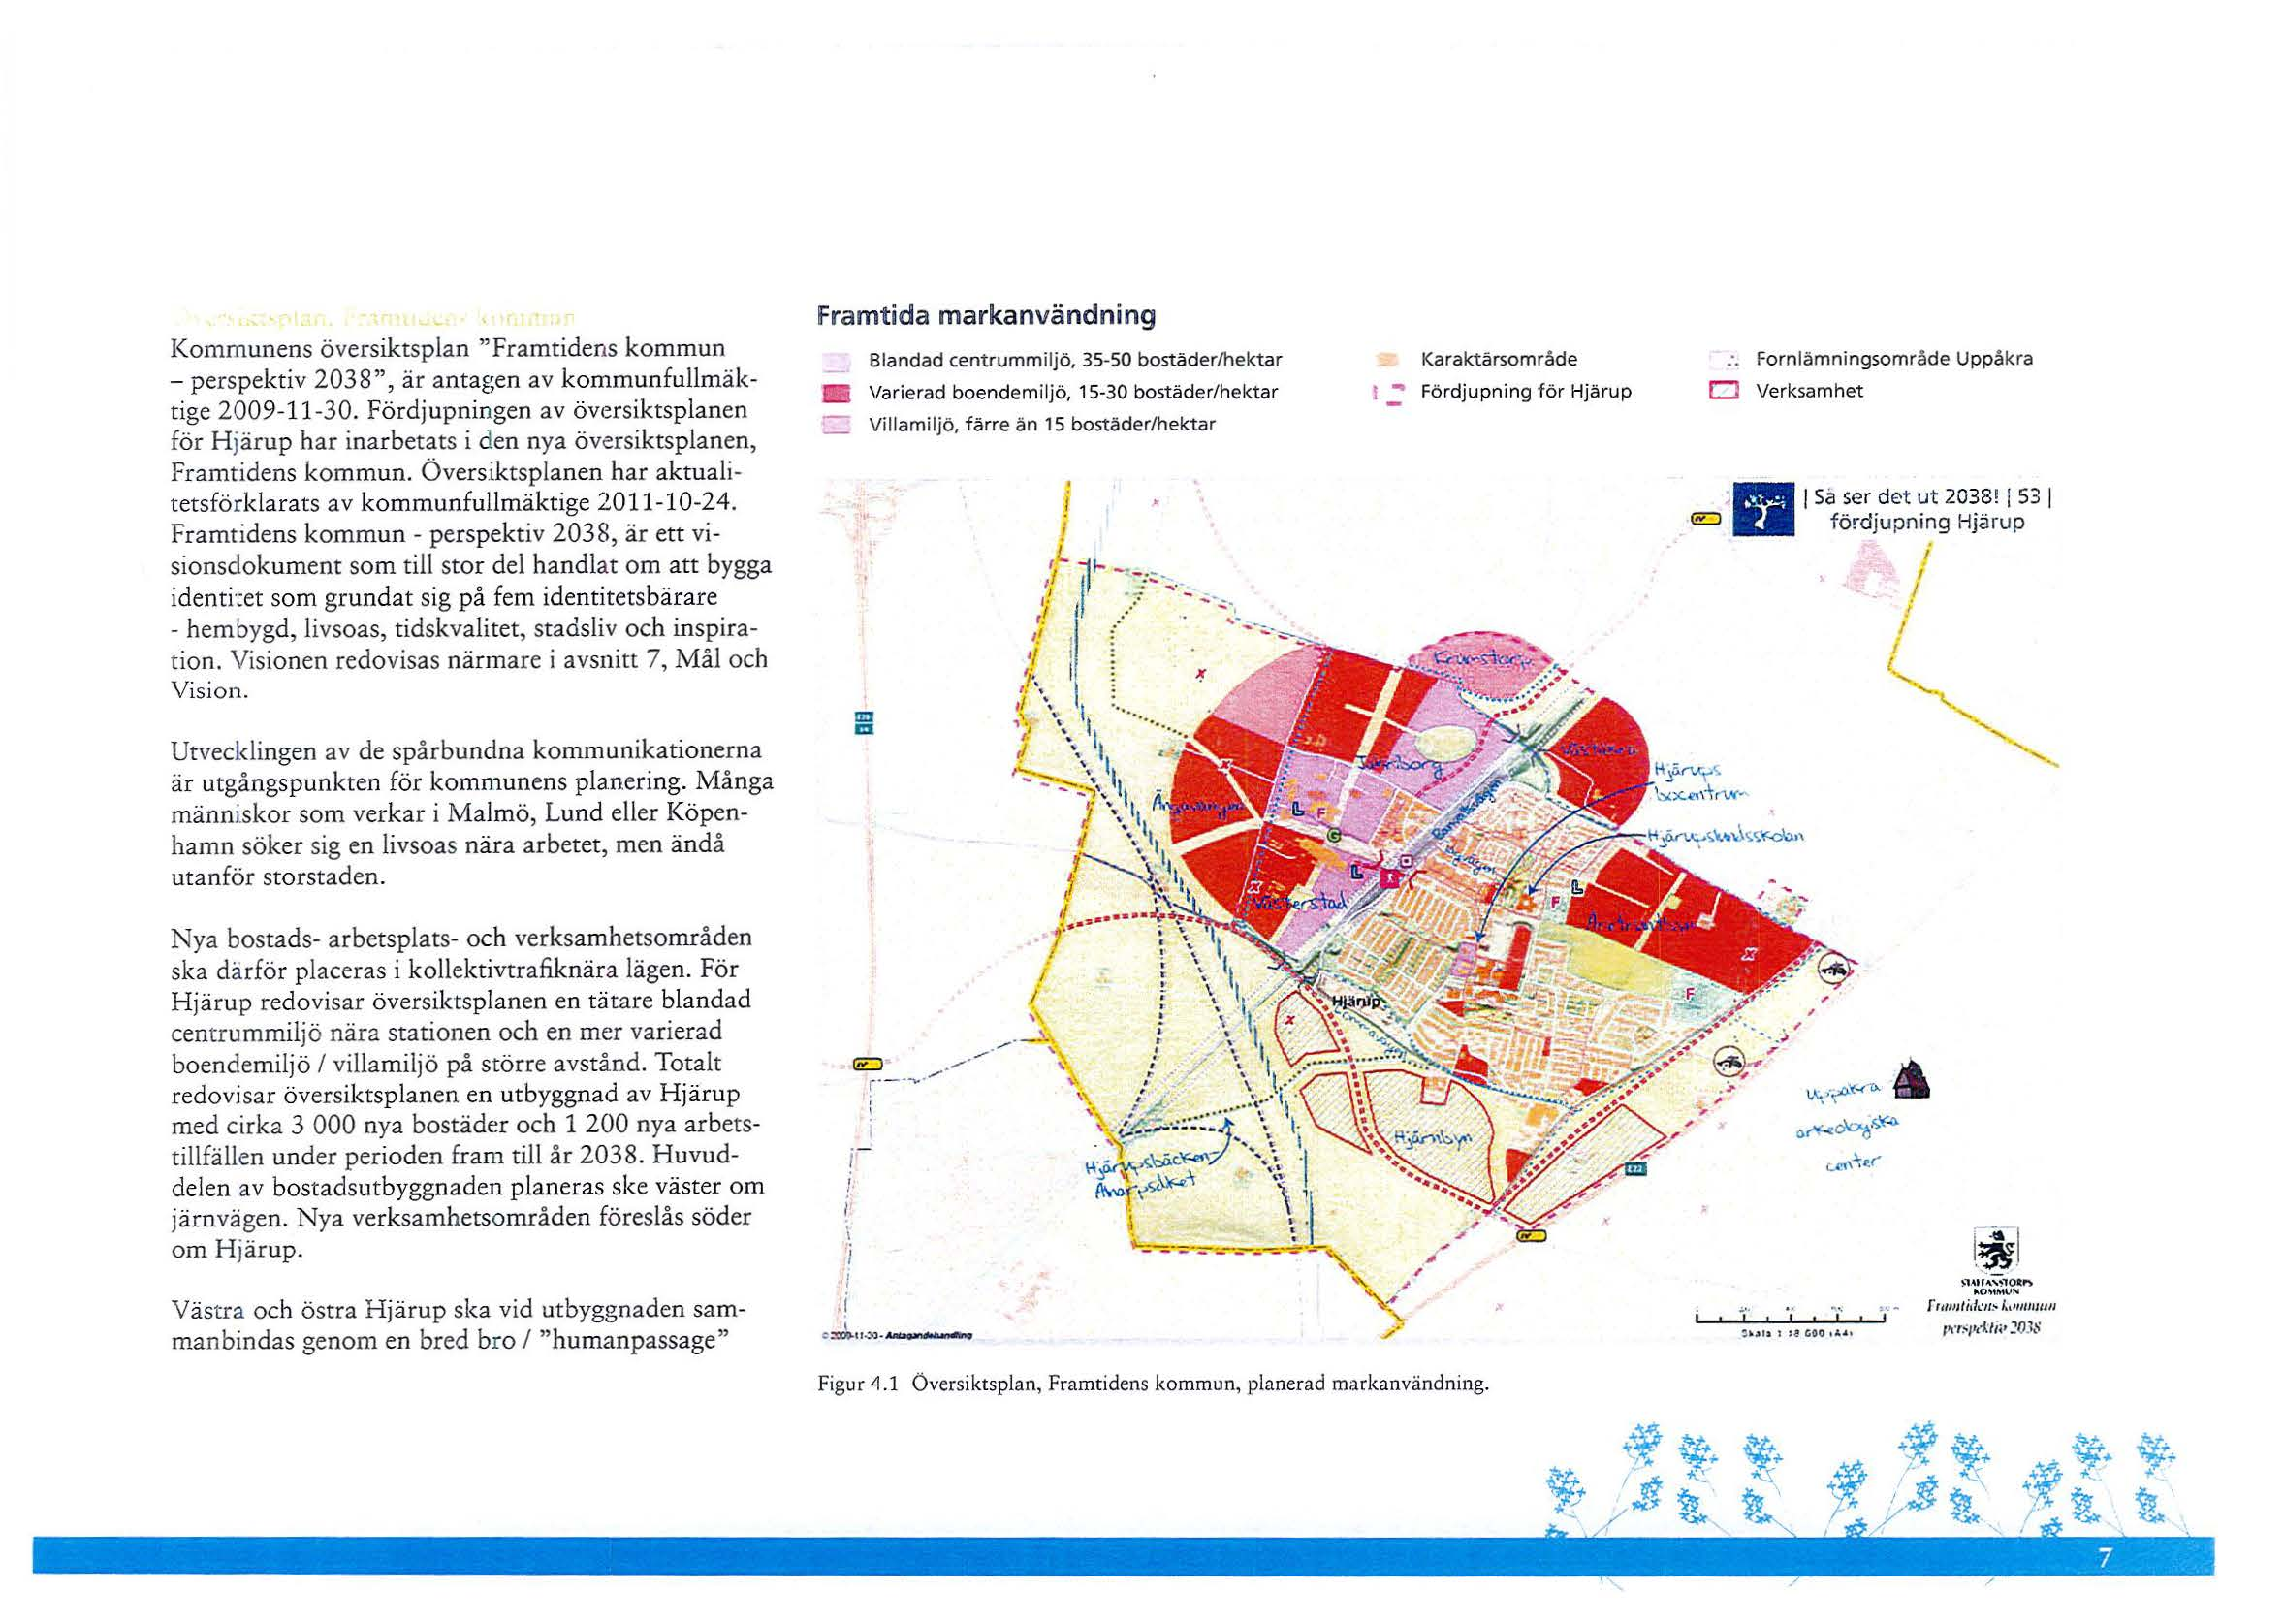 Kommunens översiktsplan "Framtidens kommun - perspektiv 2038", är antagen av kommunfullmäktige 2009-11-30.